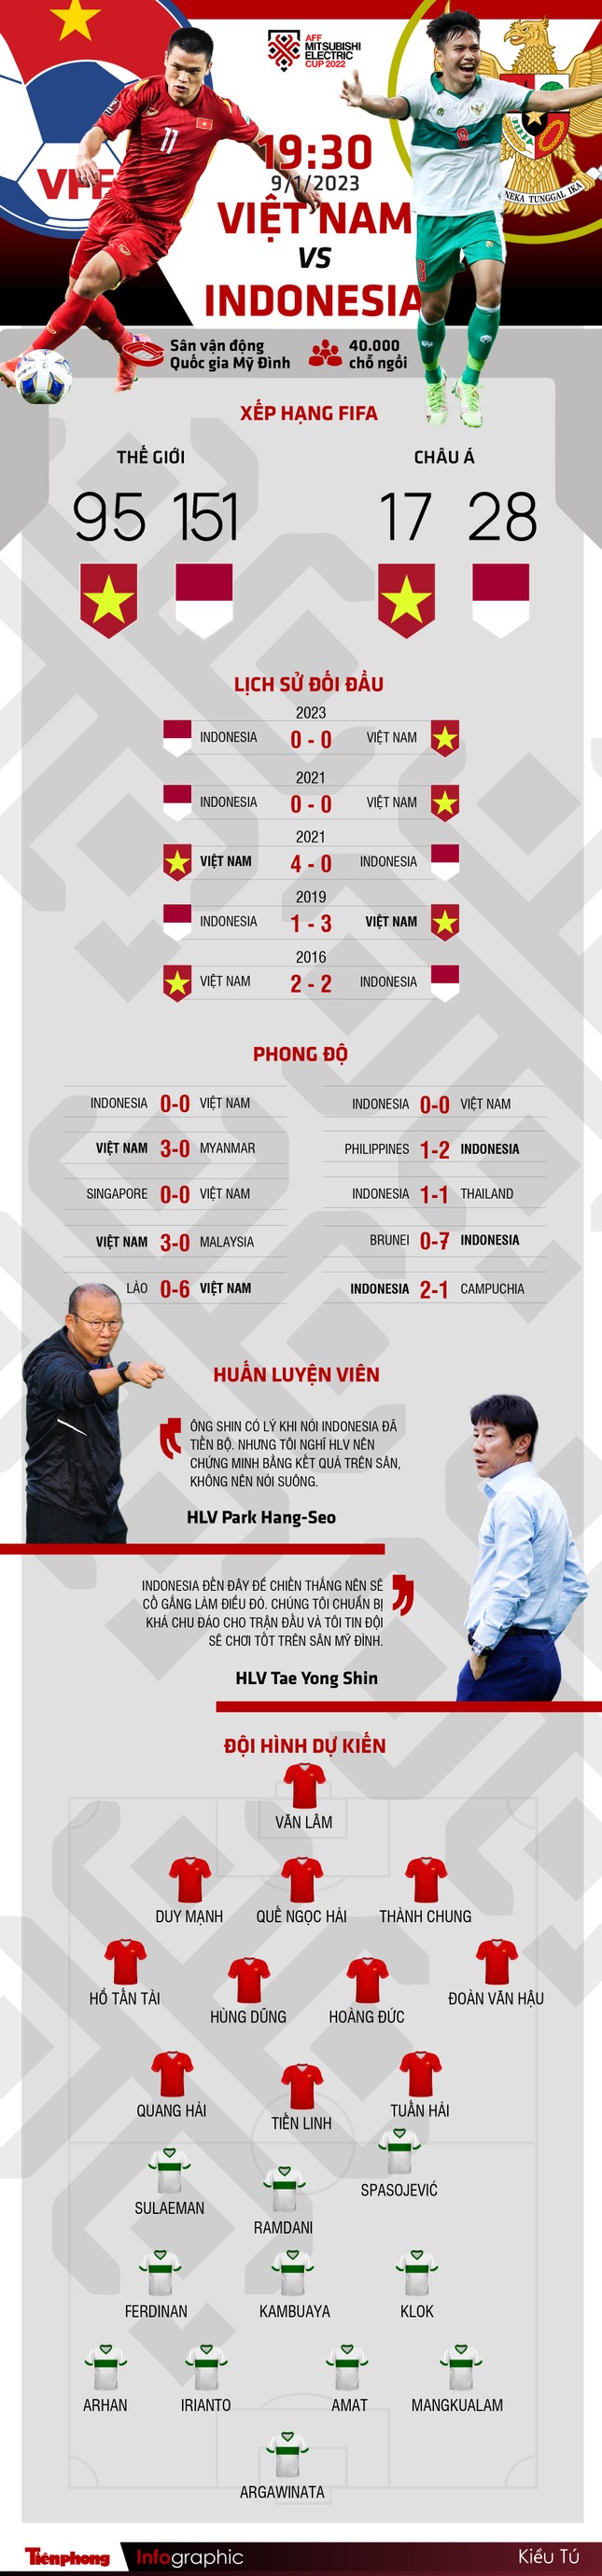 Lịch sử đối đầu Việt Nam vs Indonesia tại Mỹ Đình: Điểm tựa của HLV Park Hang-seo - Ảnh 2.